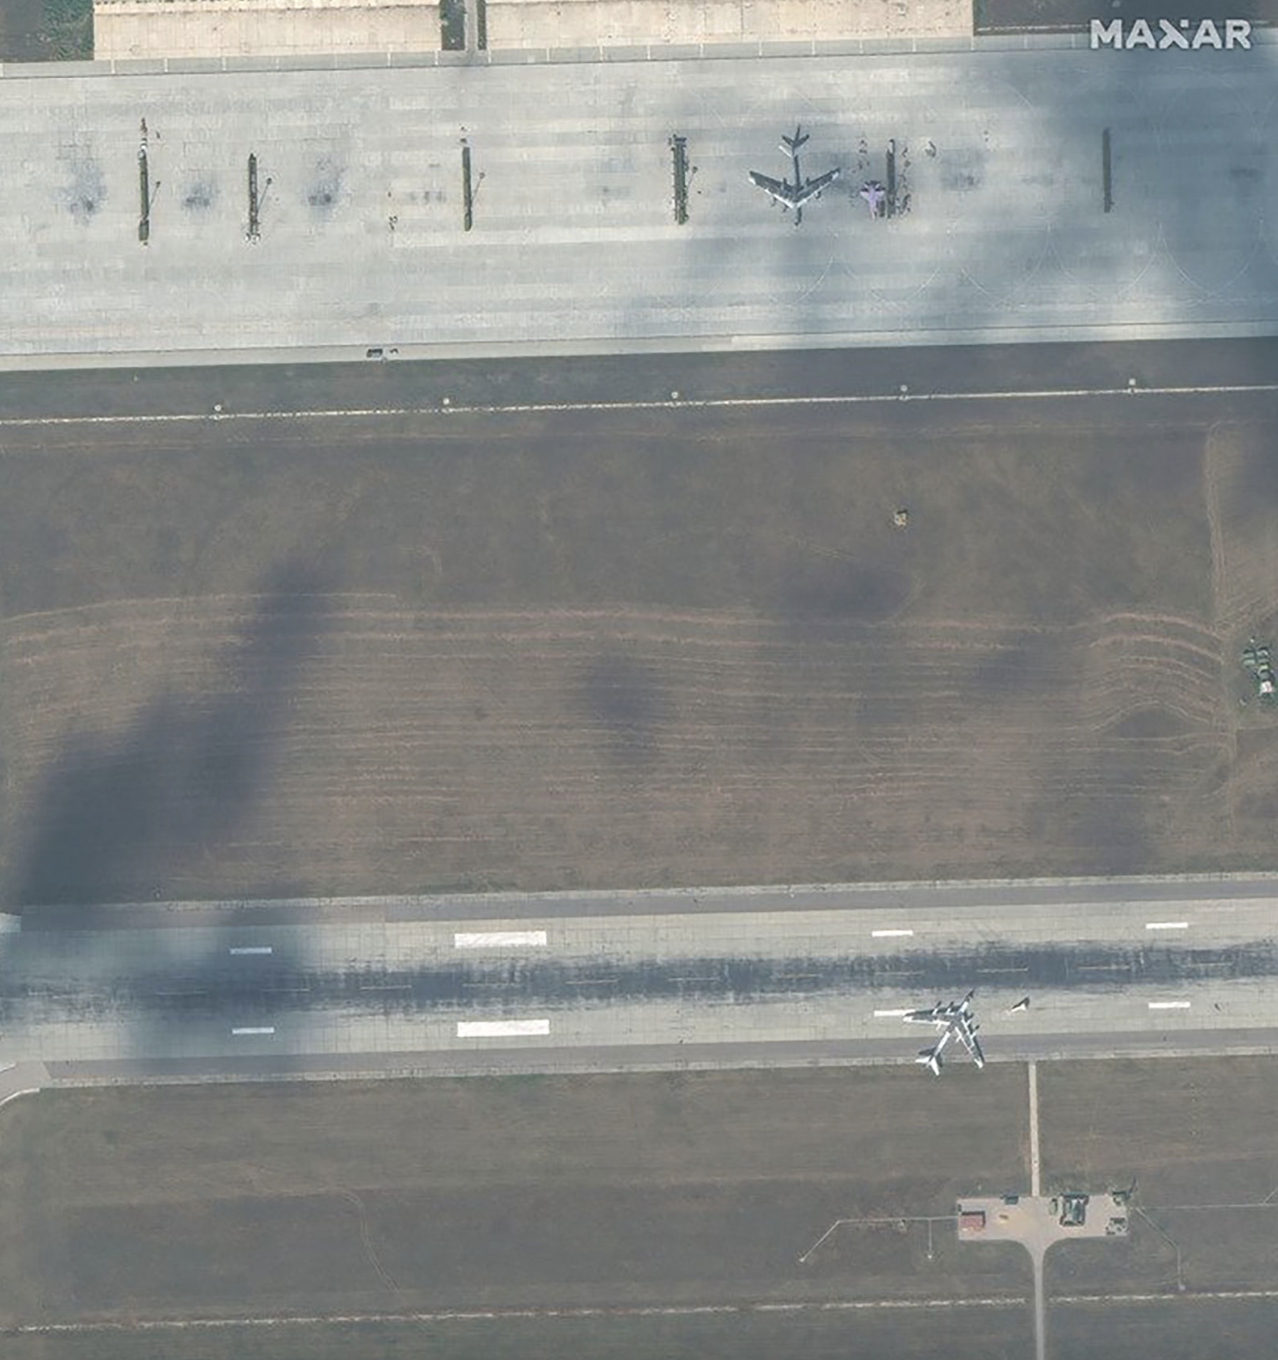 "Это выглядит глупо": западные эксперты прокомментировали "маскировку" российских самолетов с помощью шин. Фото